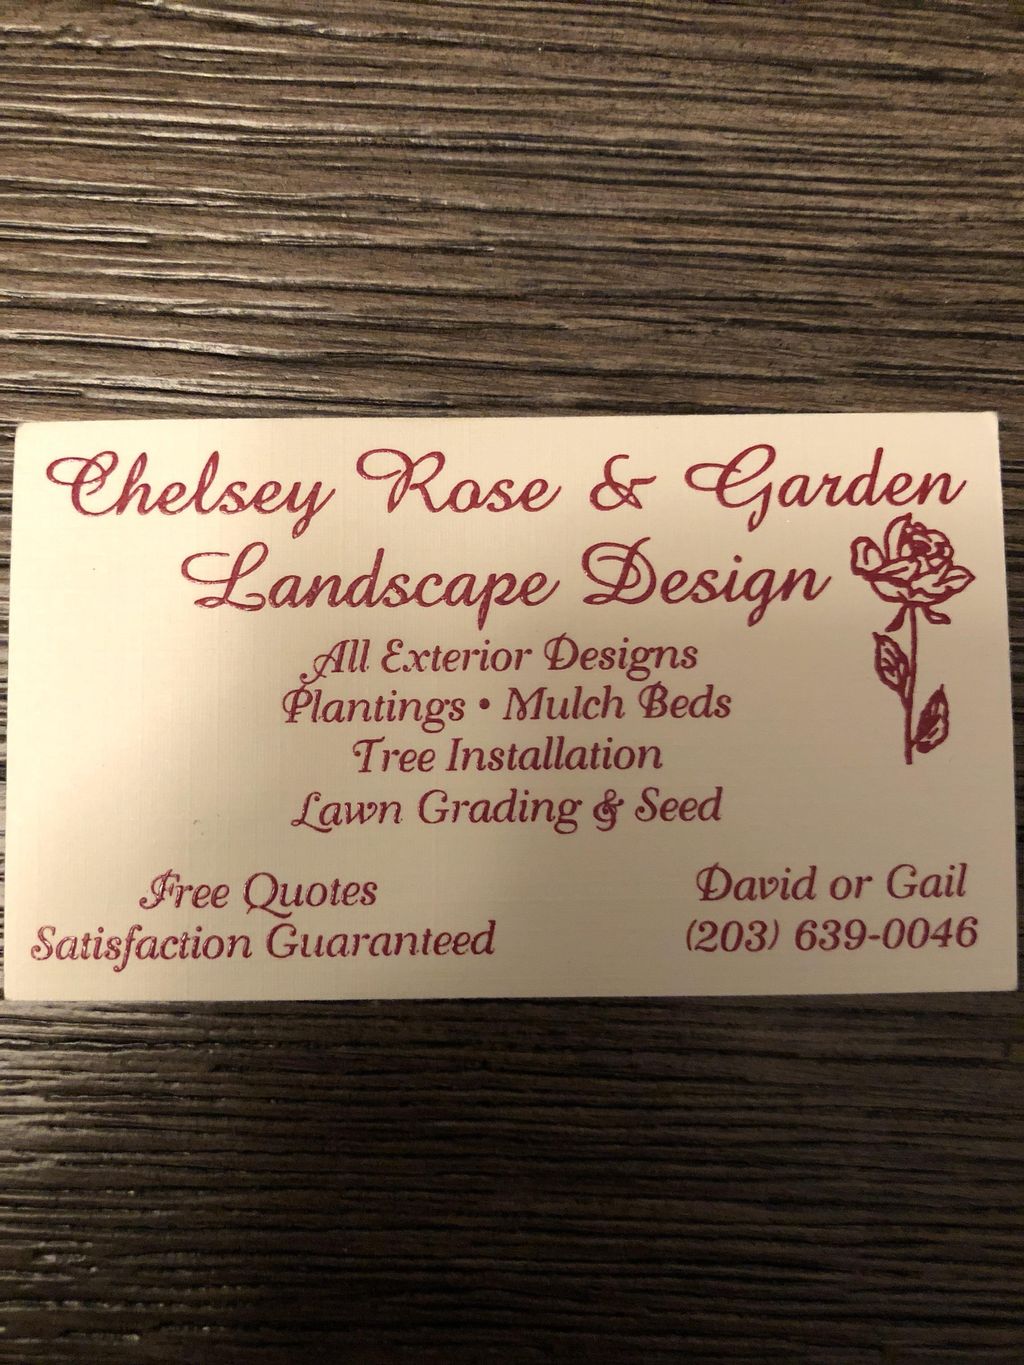 Chelsey Rose & Garden